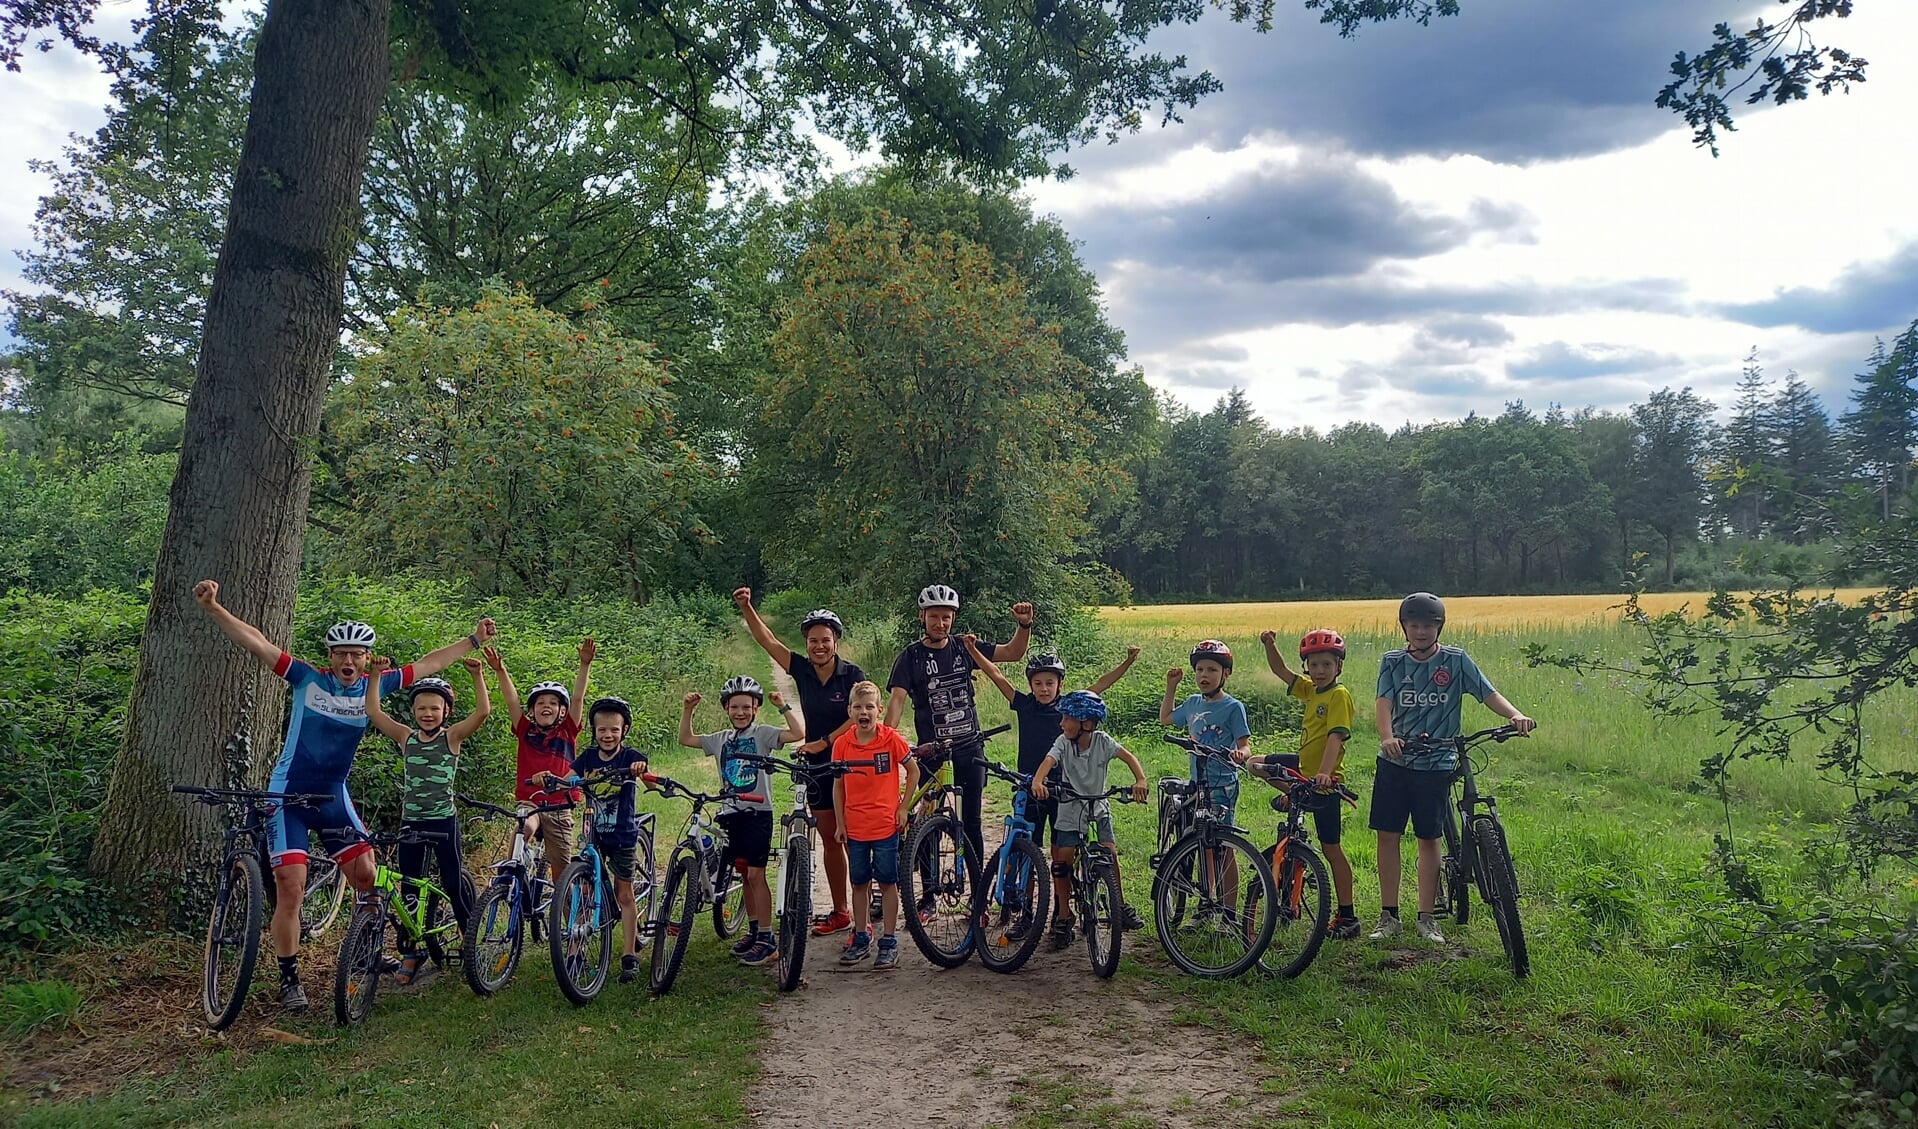 Kinderen beleven veel plezier aan mountainbike-clinics | Het laatste nieuws uit Vorden omgeving